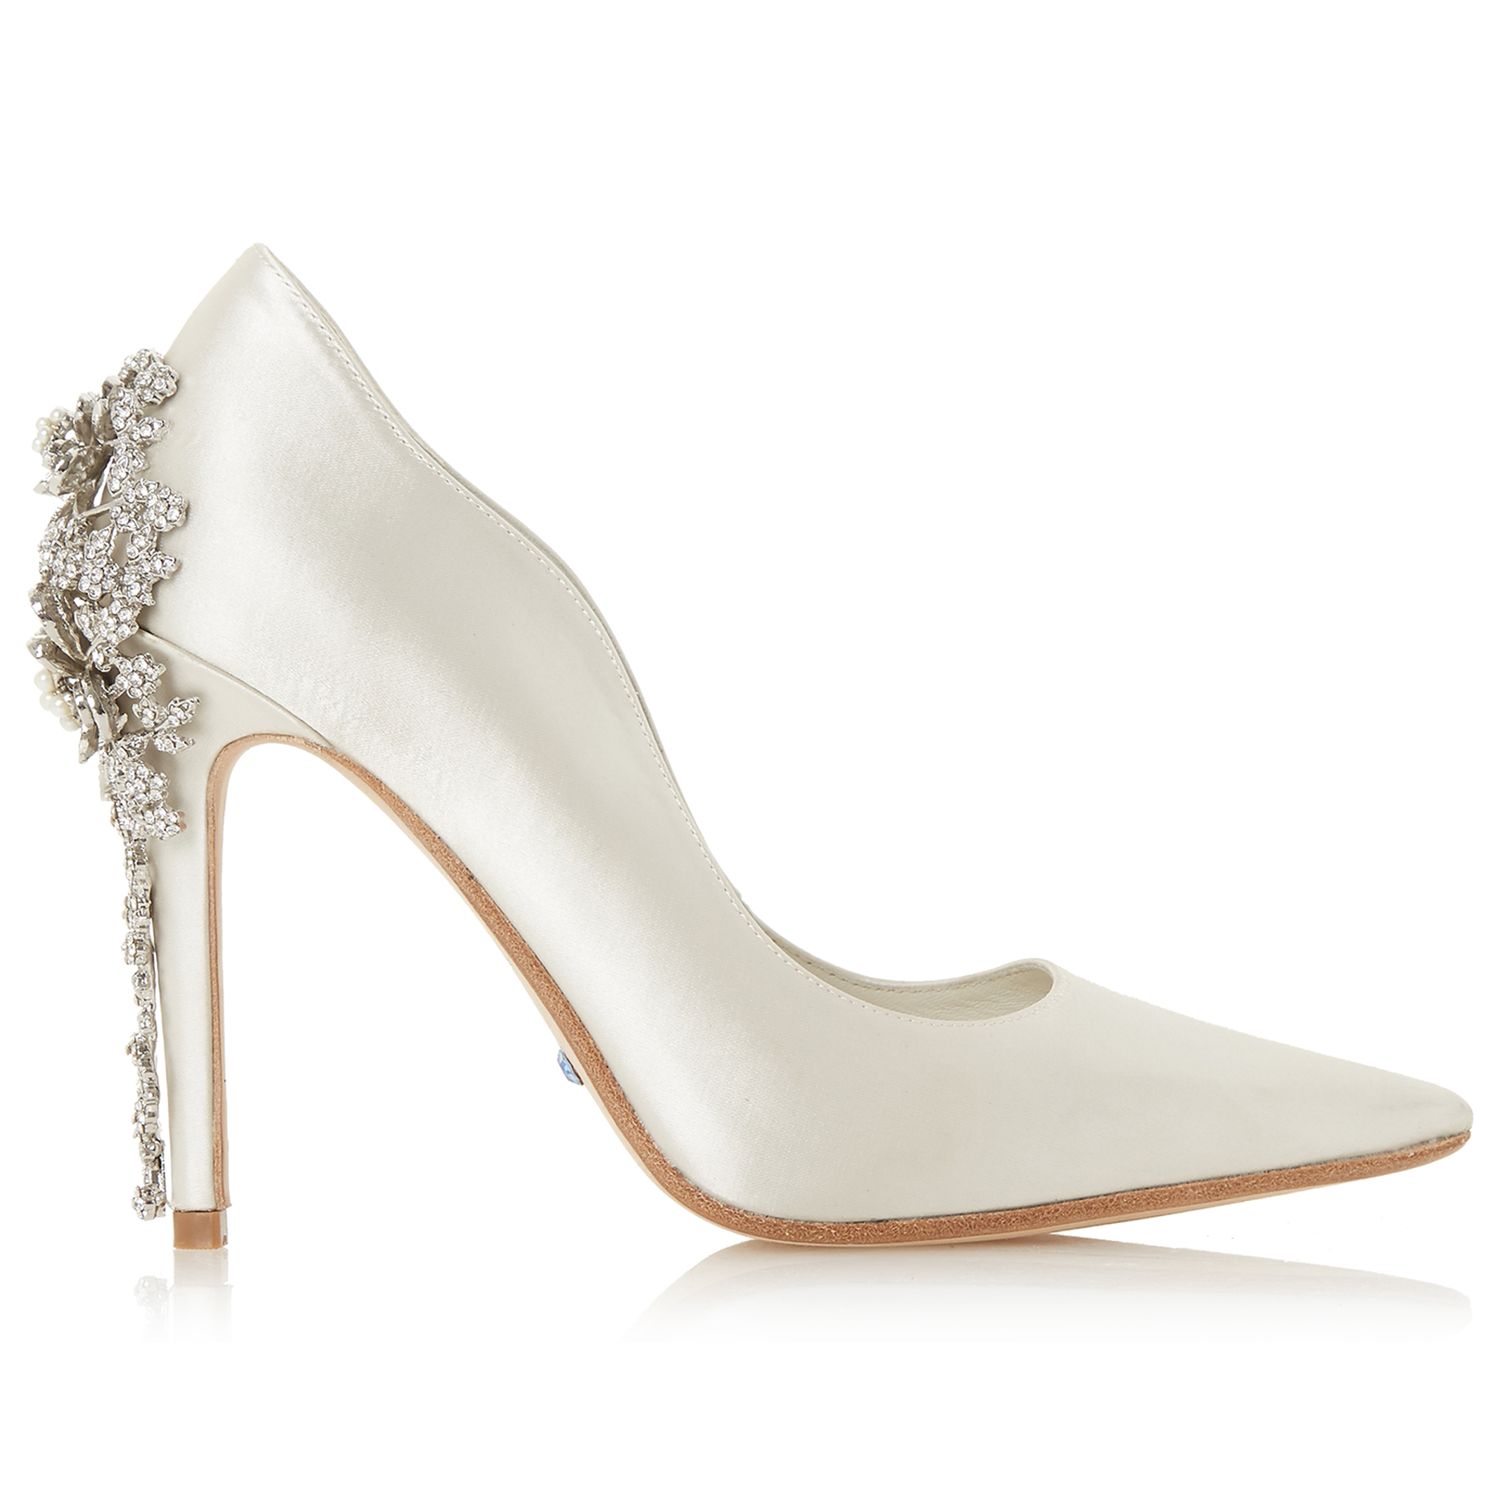 dune embellished heels